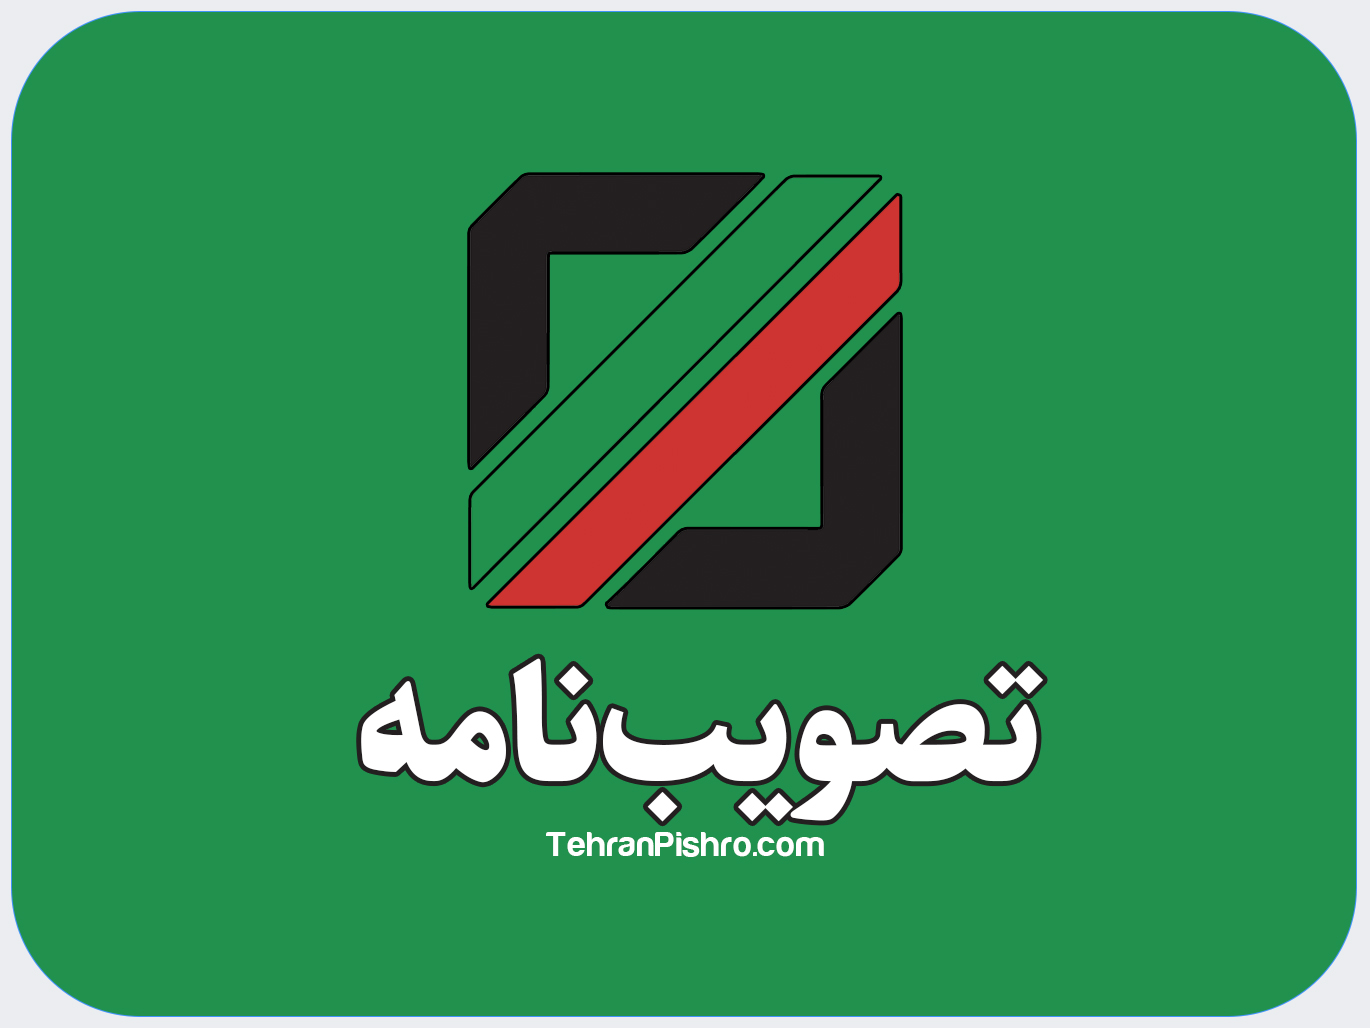 تصویب نامه هیئت وزیران در خصوص تعیین کالای توری فسفر برنز مورد مصرف بانک مرکزی جمهوری اسلامی ایران